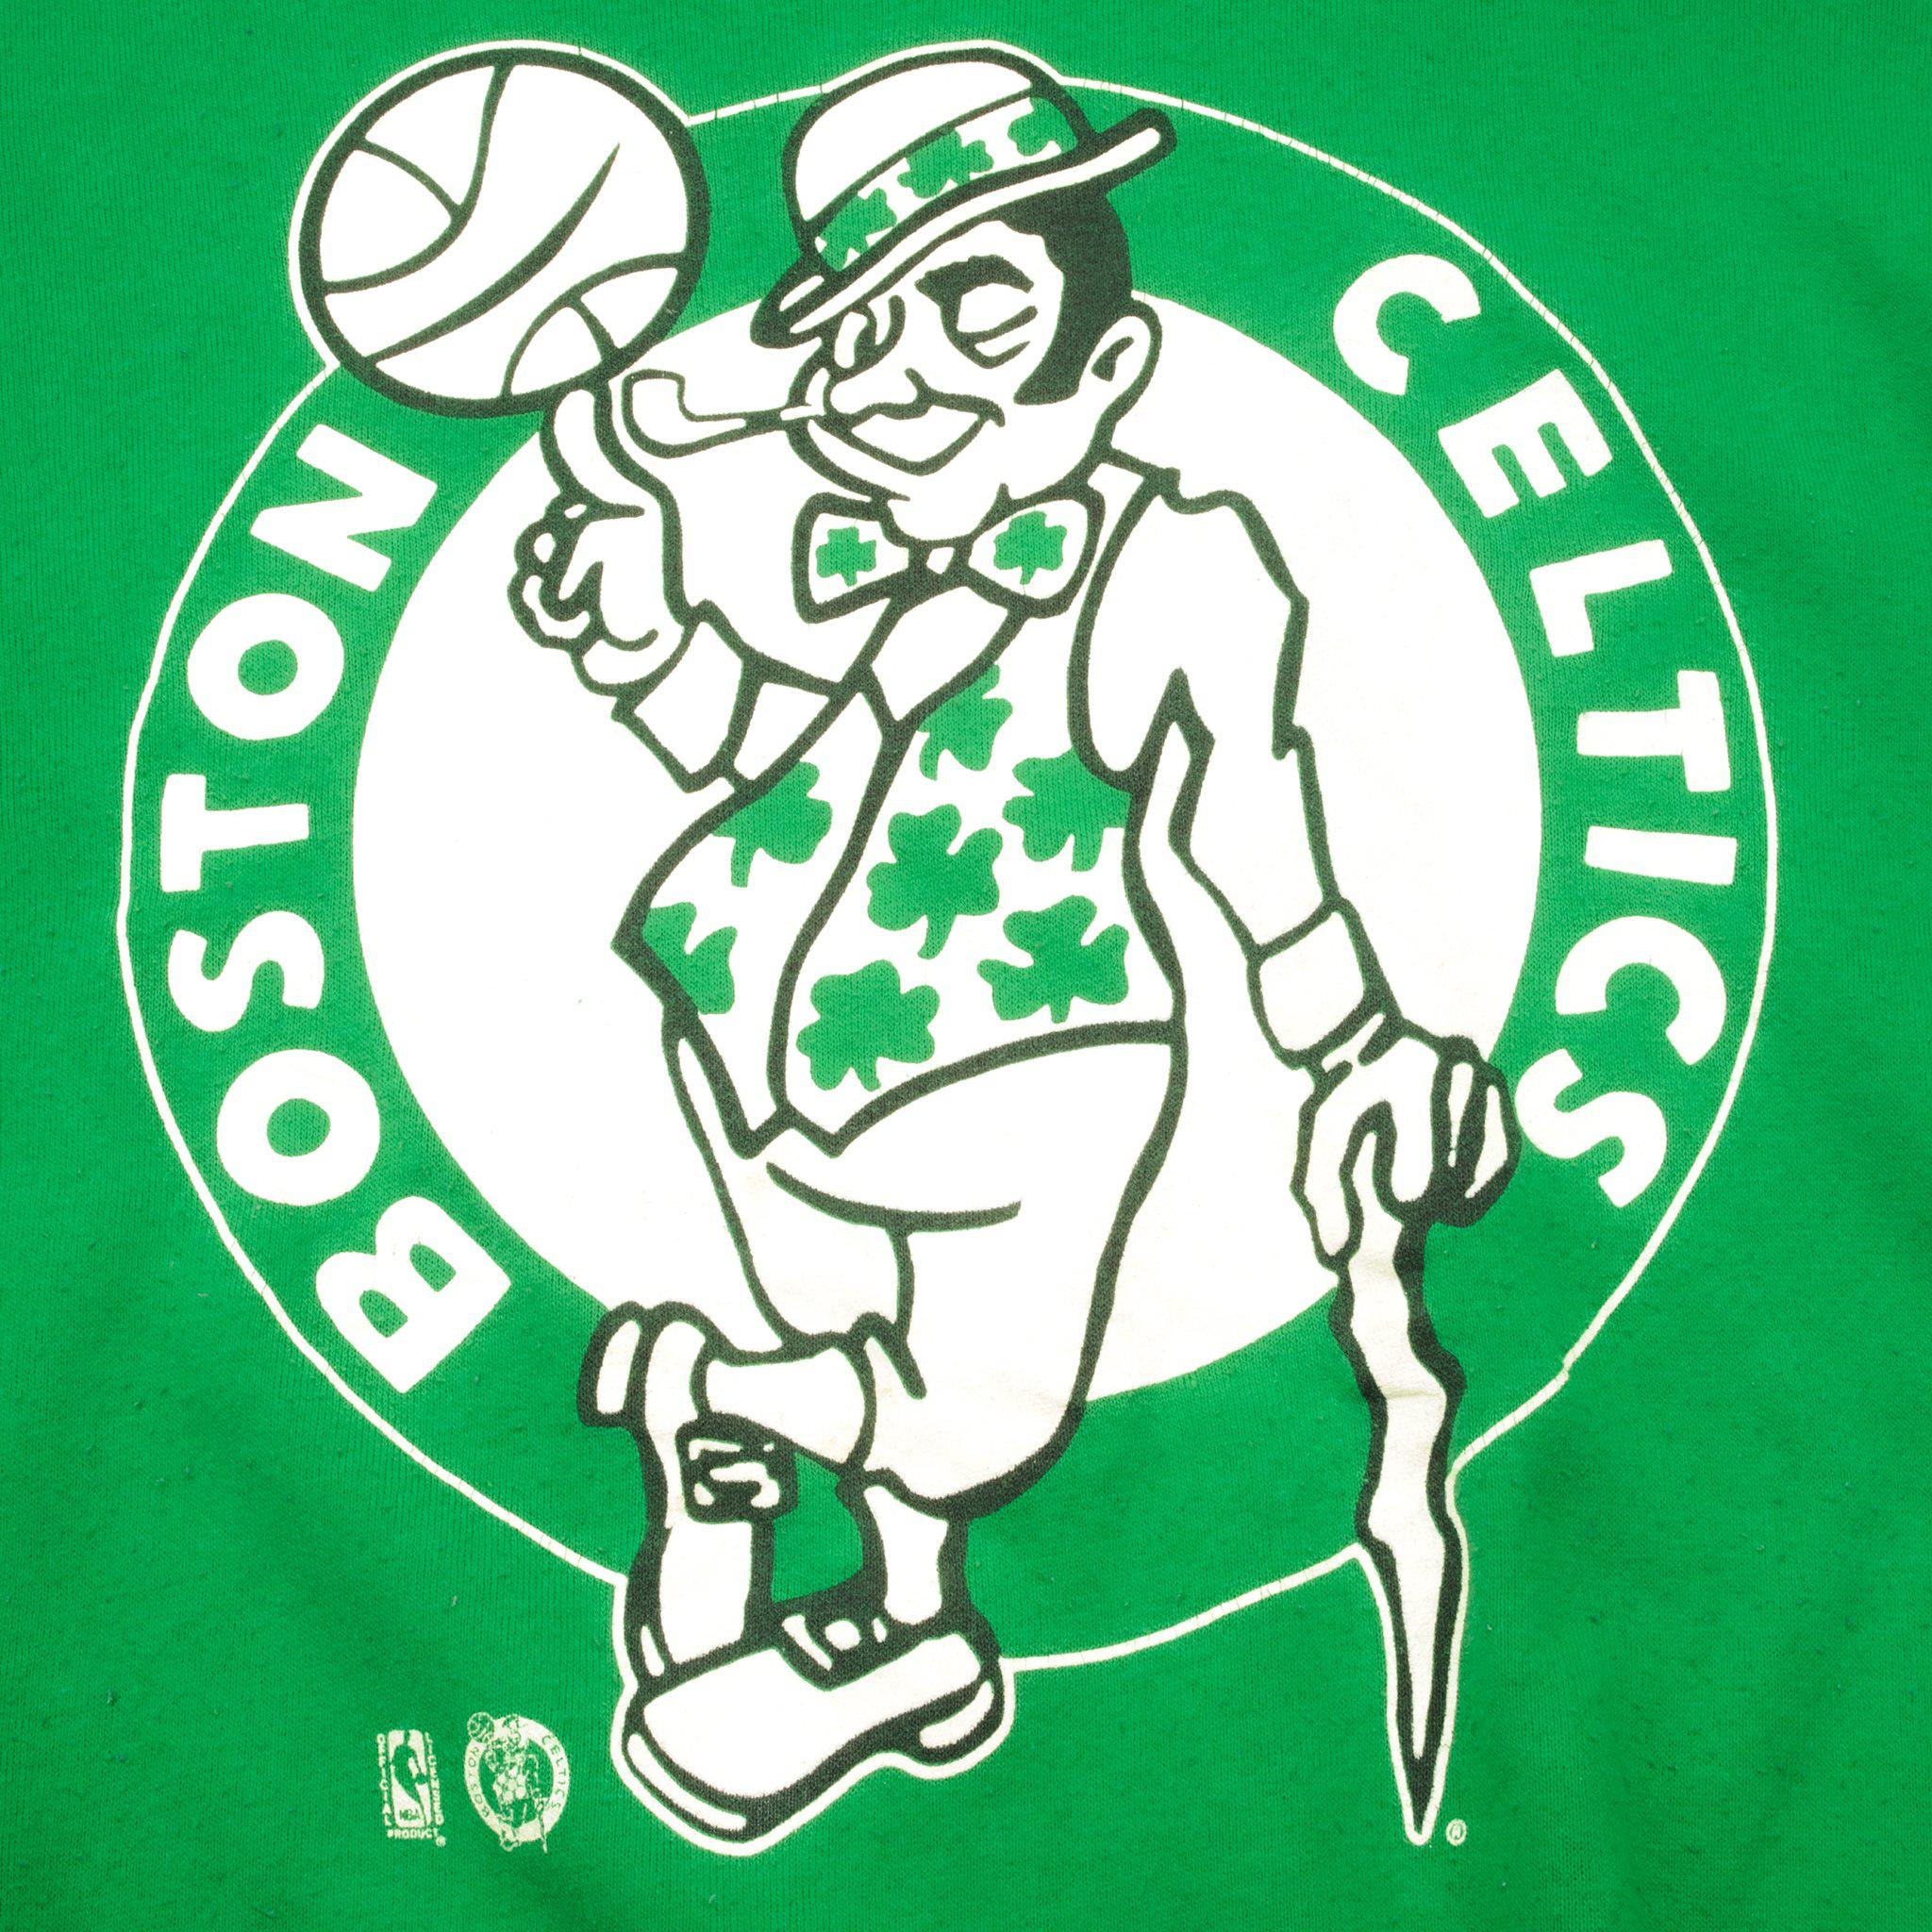 Vintage Spectator Sportswear BOSTON CELTICS Eastern Conference NBA XL  Sweatshirt